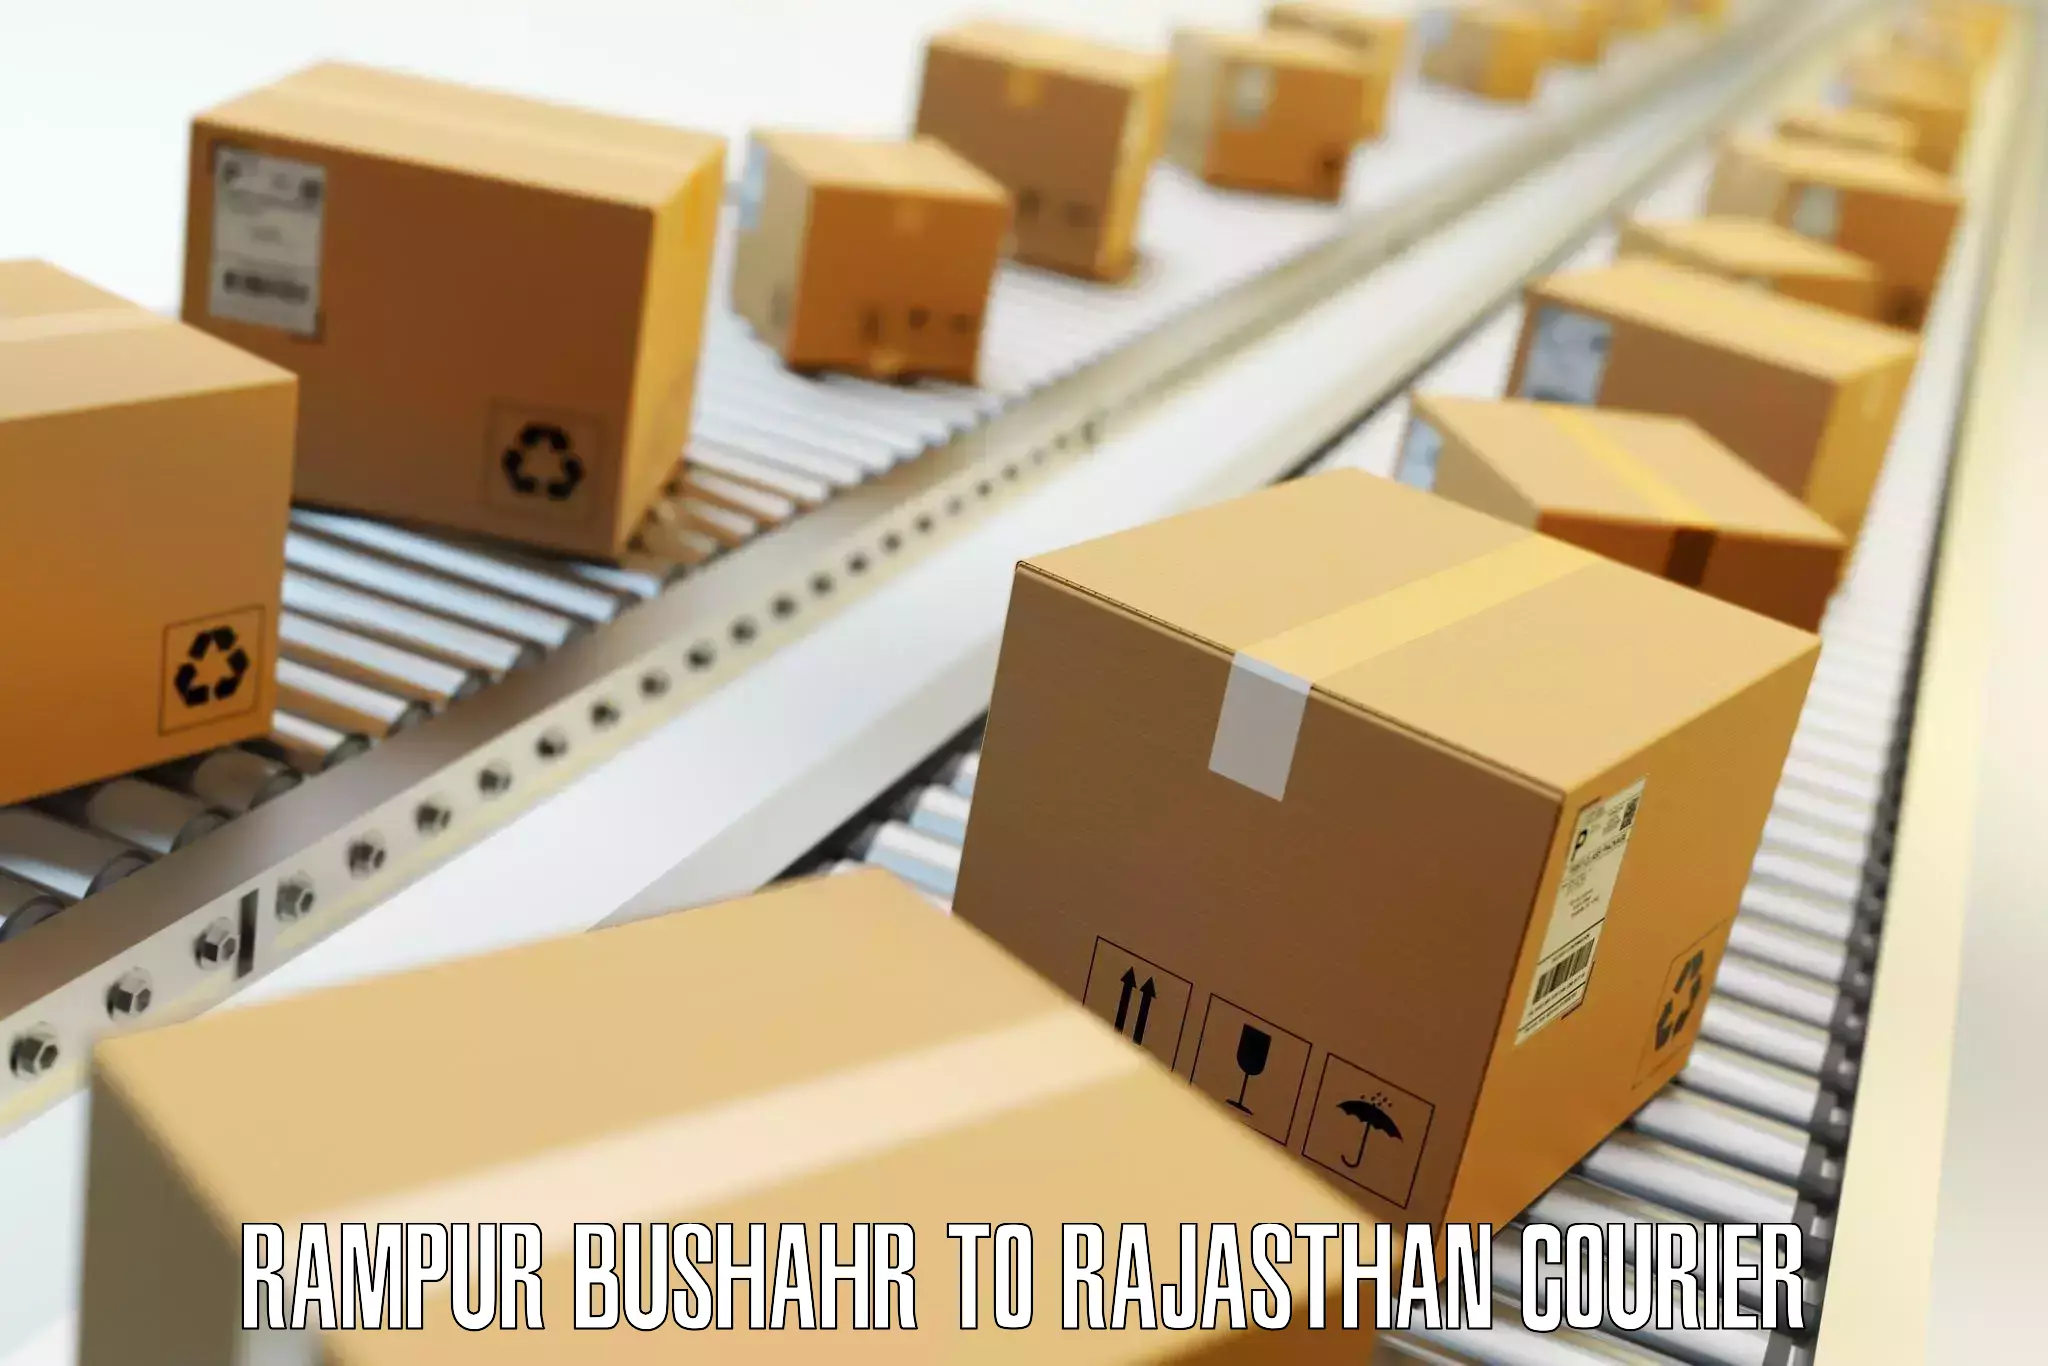 Luggage transport consulting Rampur Bushahr to Pratapgarh Rajasthan